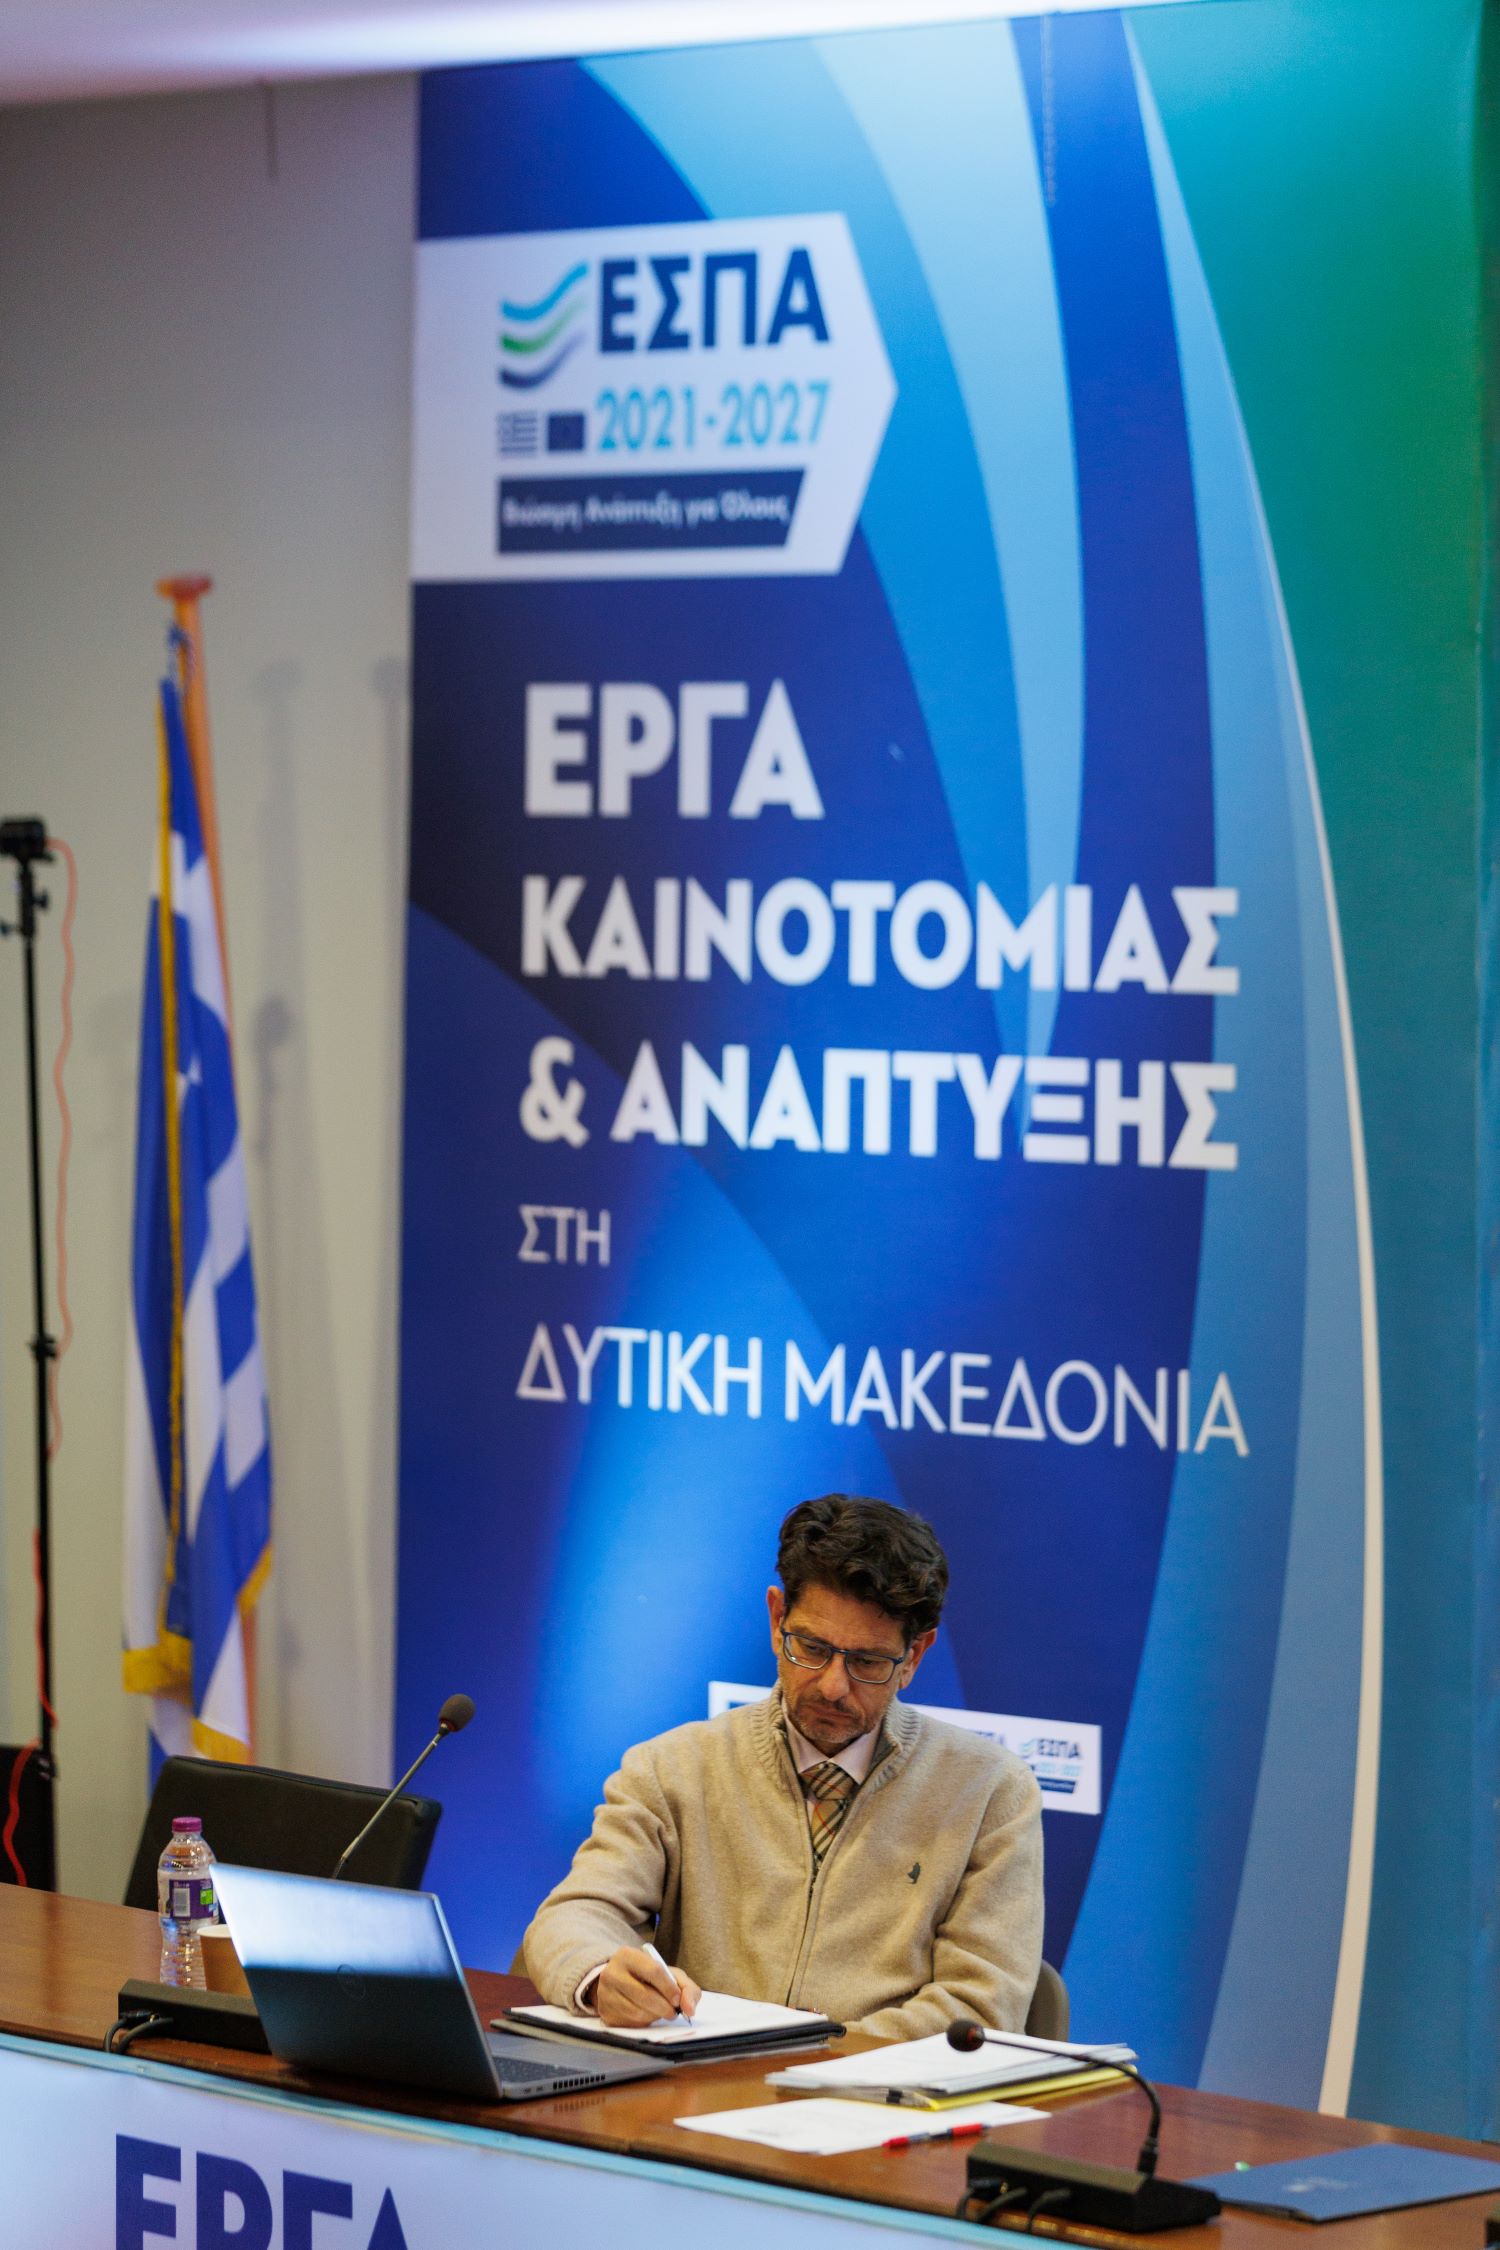 Γ. Κασαπίδης: Η ολοκλήρωση του Προγράμματος «Δυτική Μακεδονία» 2014 – 2020 βρίσκει τη Δυτική Μακεδονία να έχει απορροφήσει το σύνολο των κονδυλίων κάτι που επετεύχθη μετά από επίπονη προσπάθεια